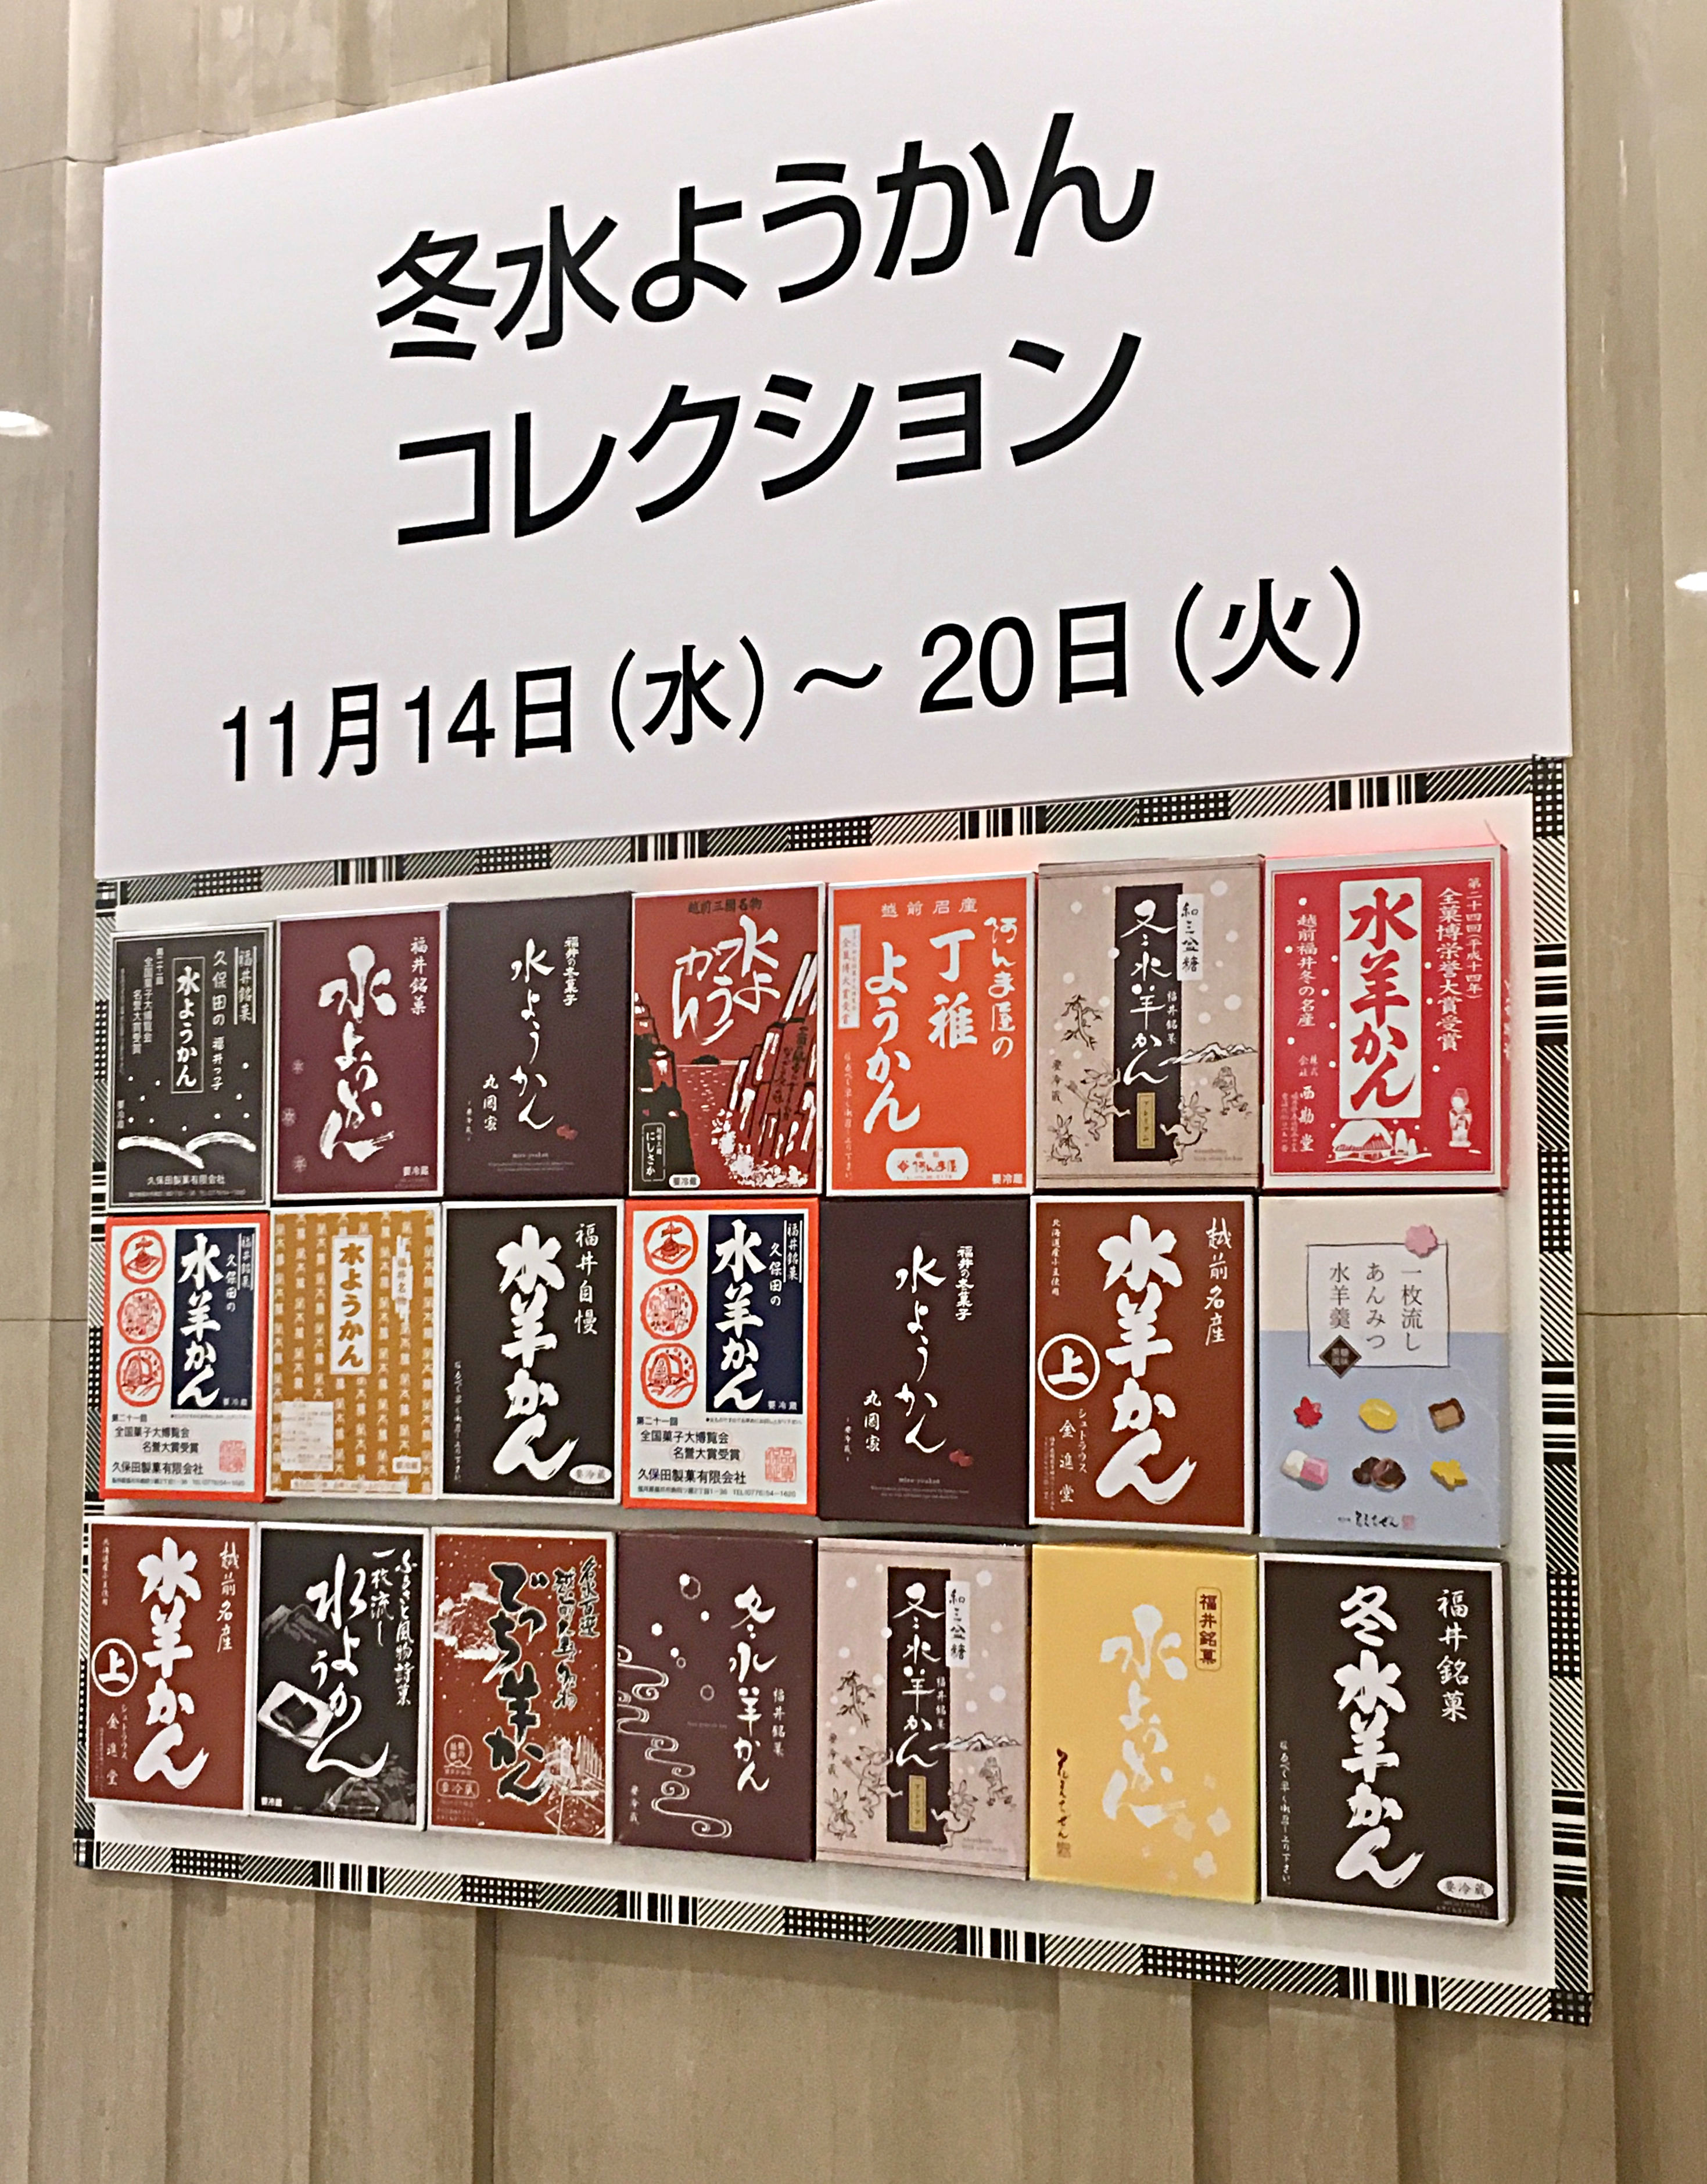 福井の水ようかん、日本橋三越で展示販売されてるってよ。（※11/20まで）